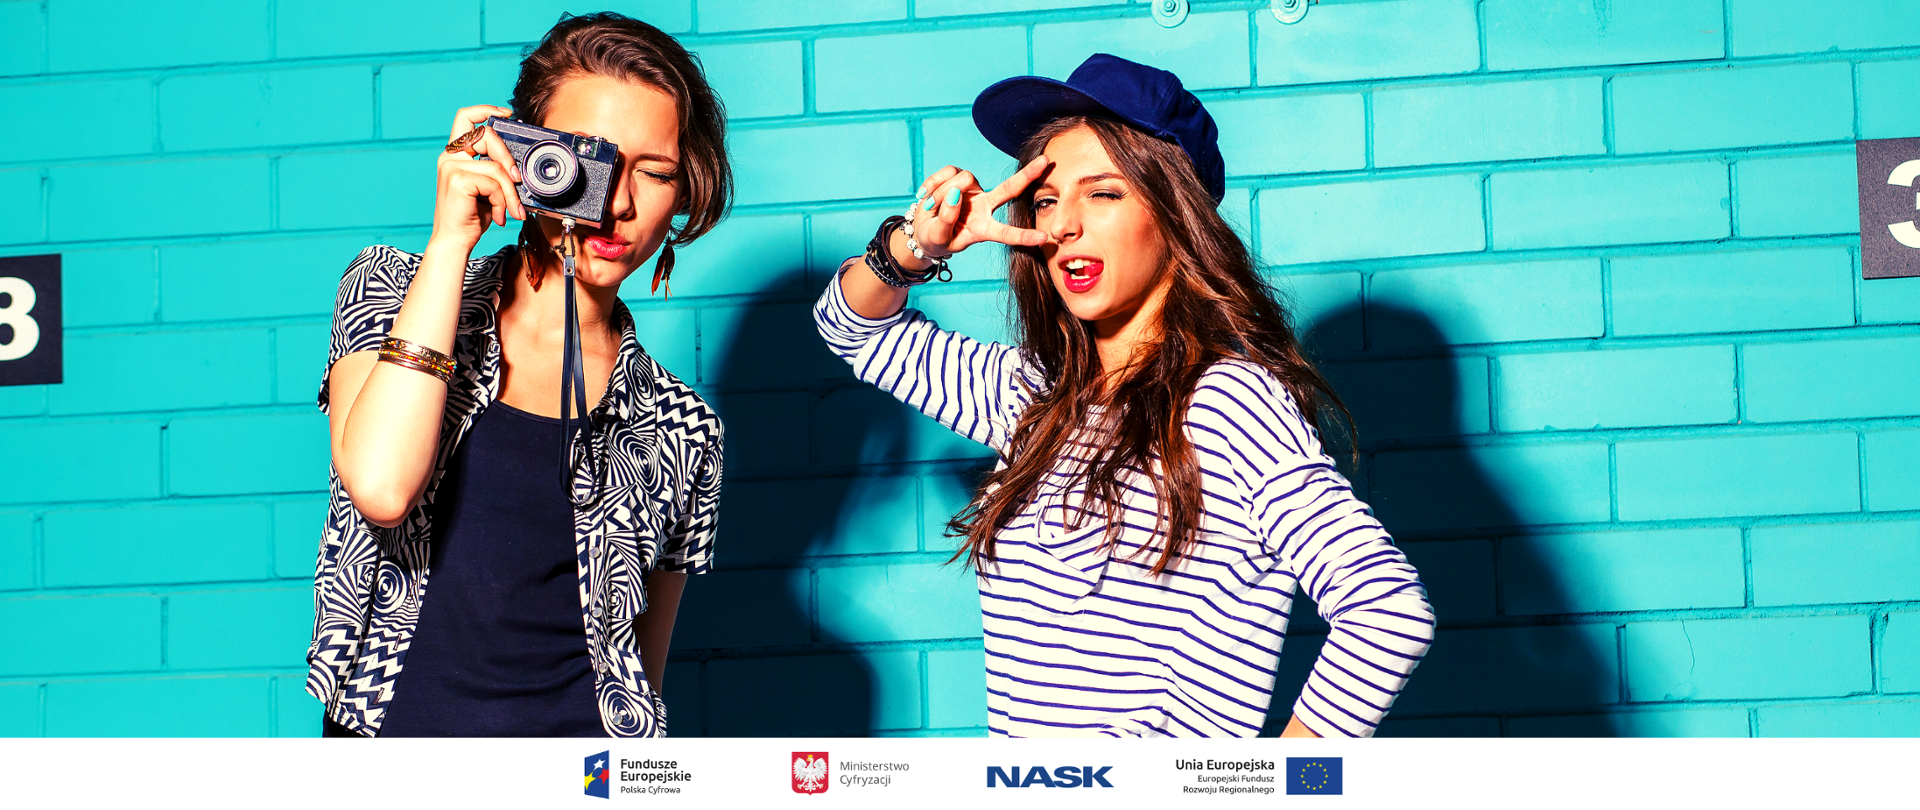 Dwie nastolatki stojące obok niebieskiej ściany, jedna z nich w czapce z daszkiem druga trzyma aparat fotograficzny.